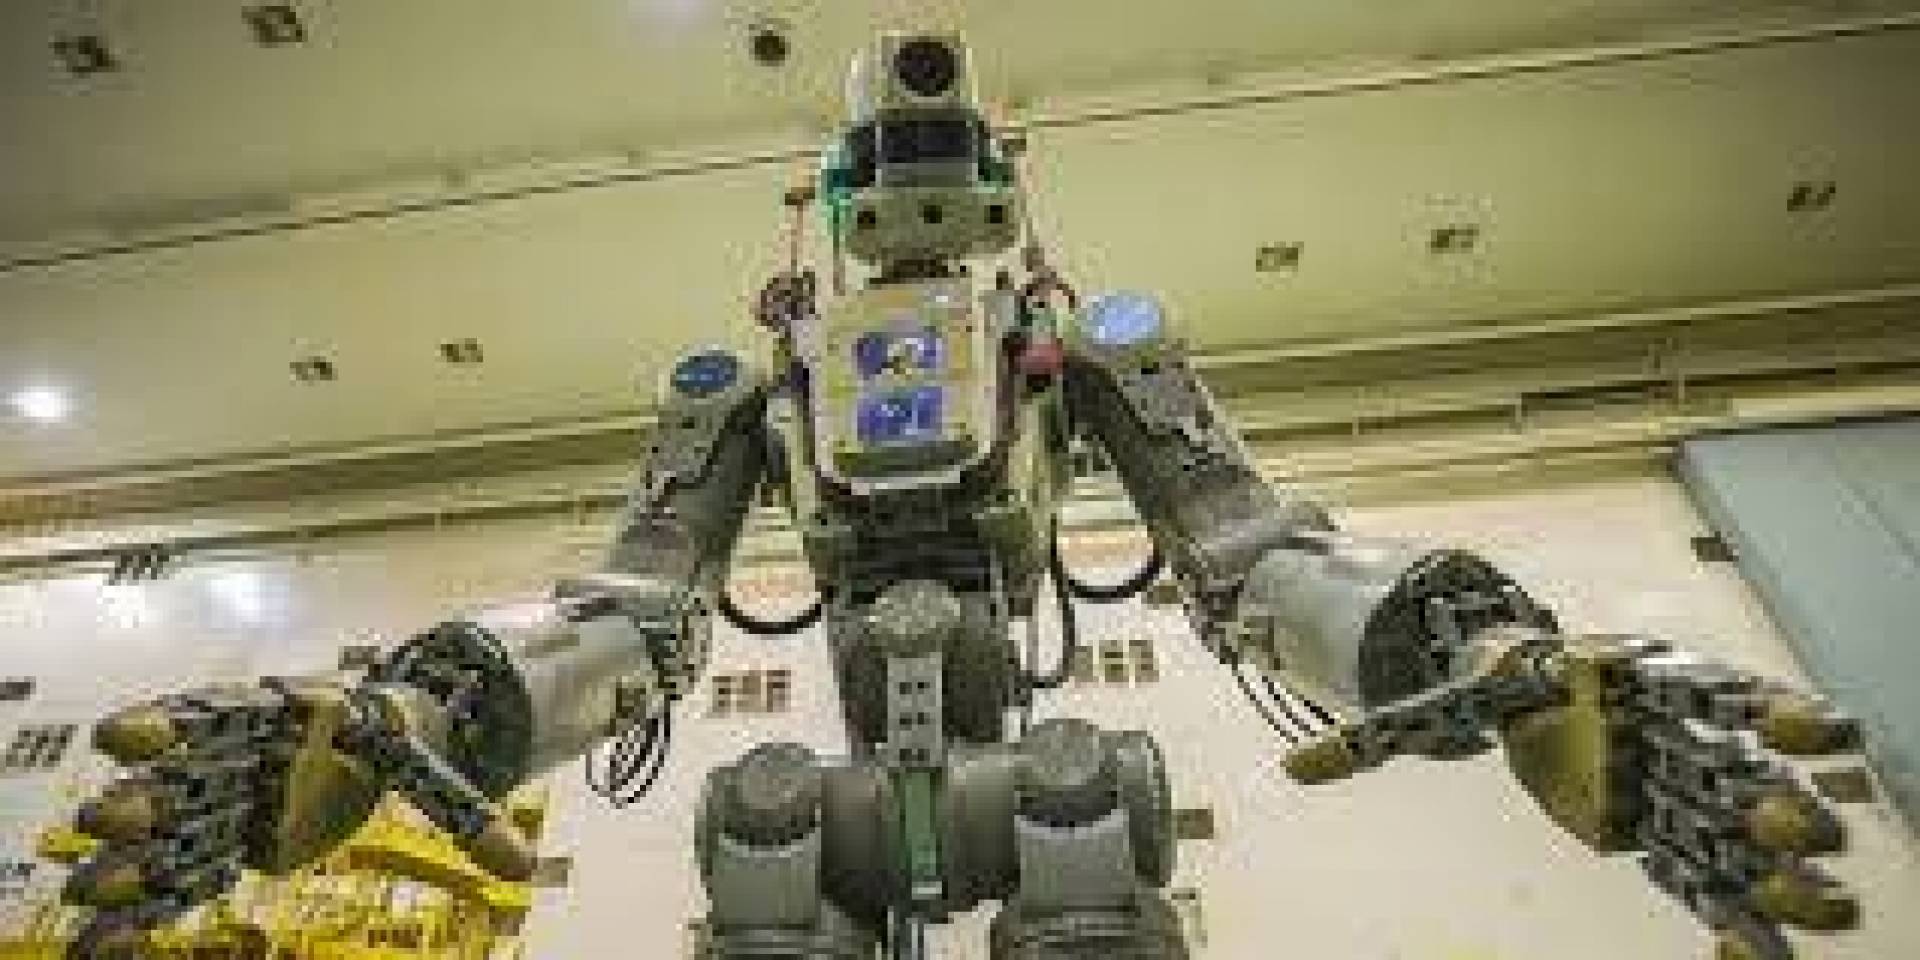 اختبار روبوت روسي معزز بالطاقة لنقل وتحميل القذائف المدفعية الثقيلة